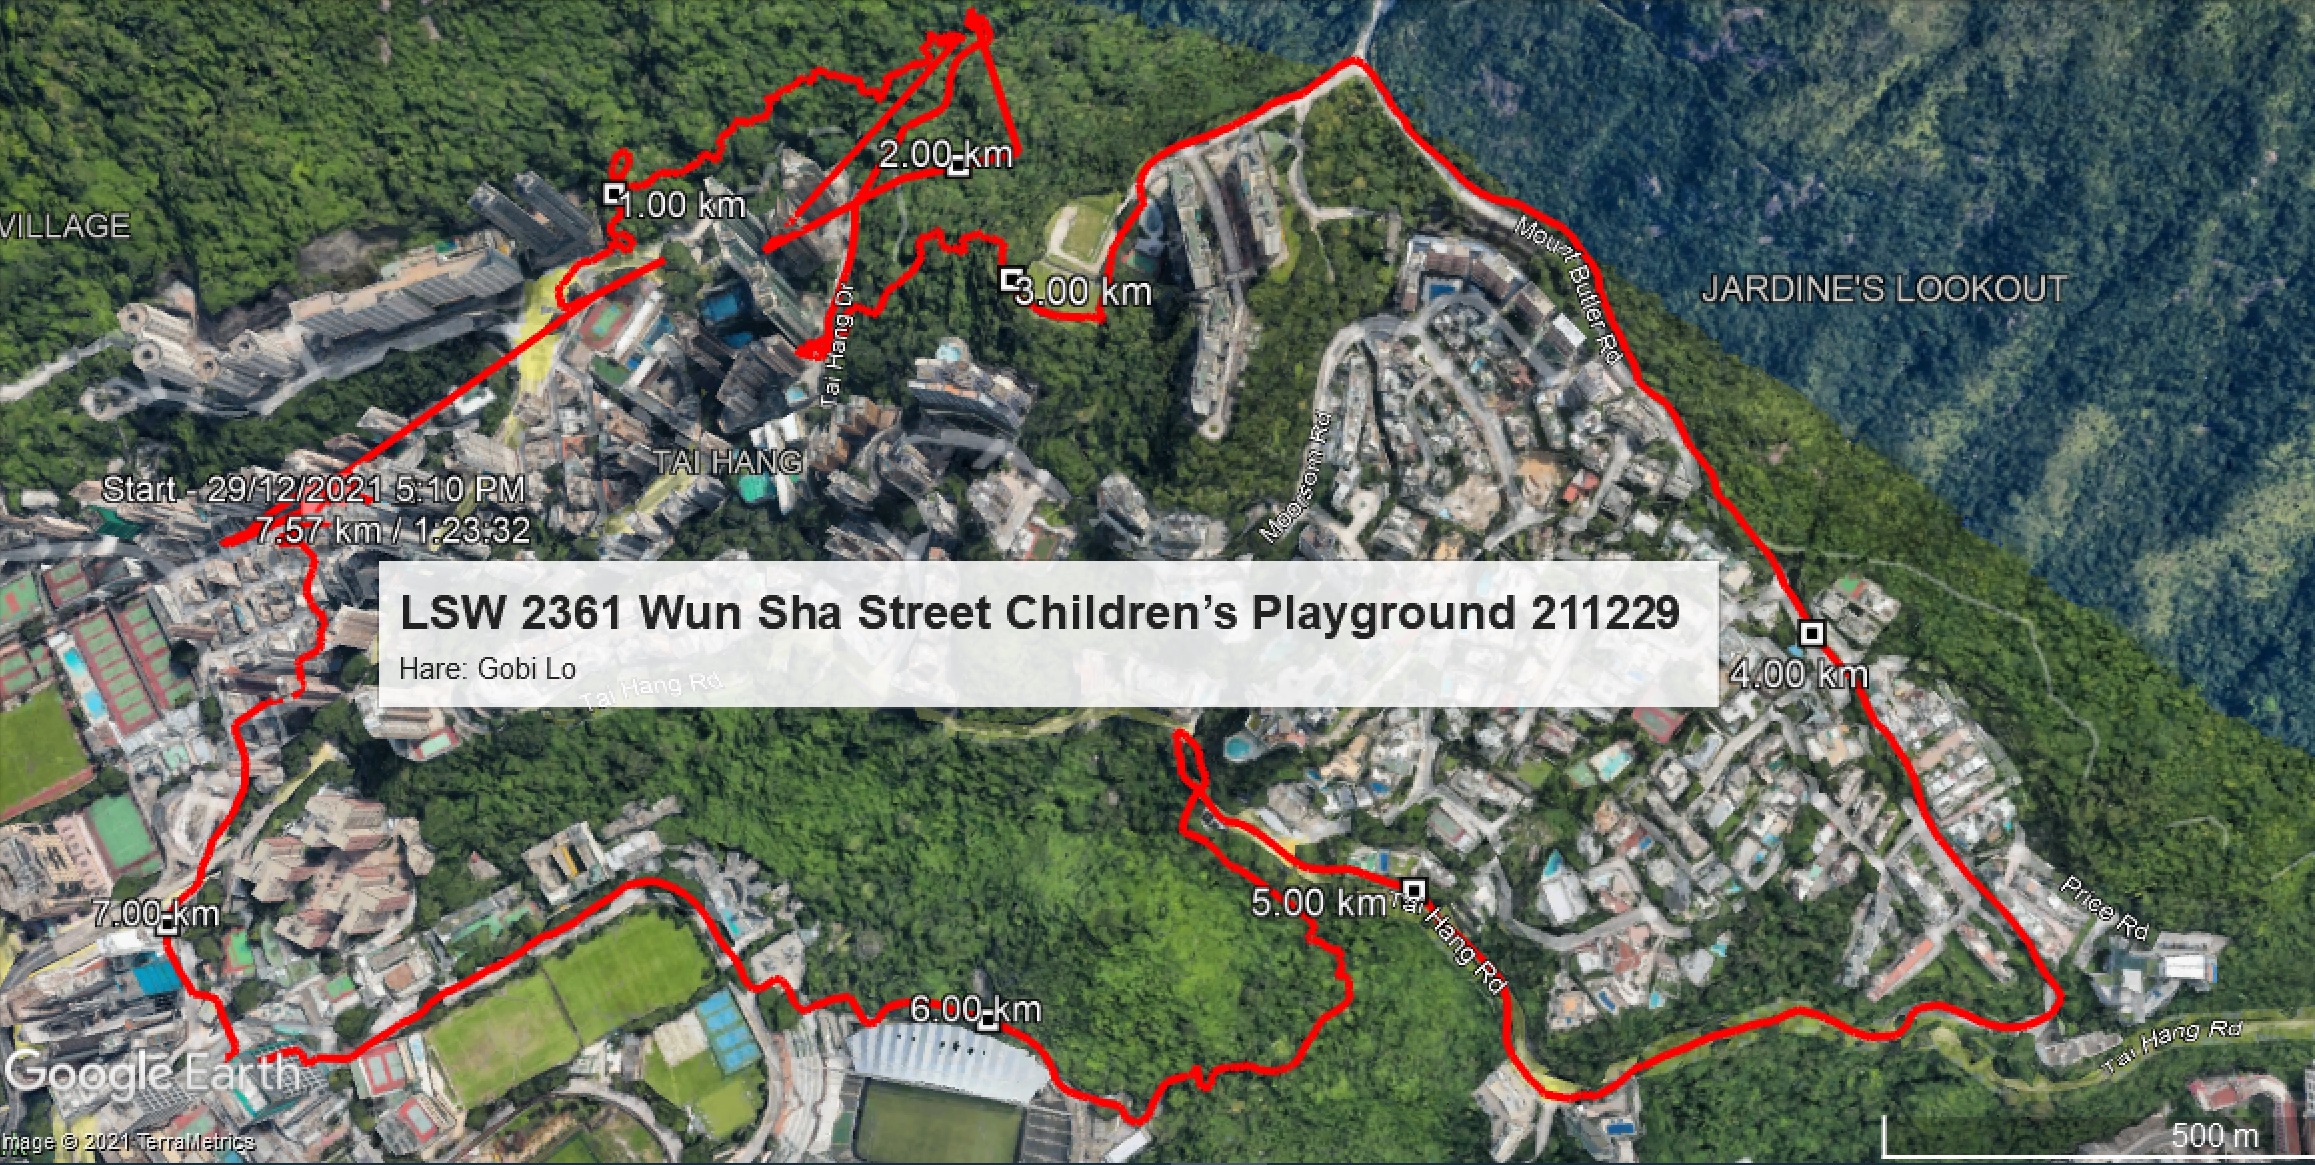 LSW 2361 Wun Sha Street Children's Playground 211229 7.57km